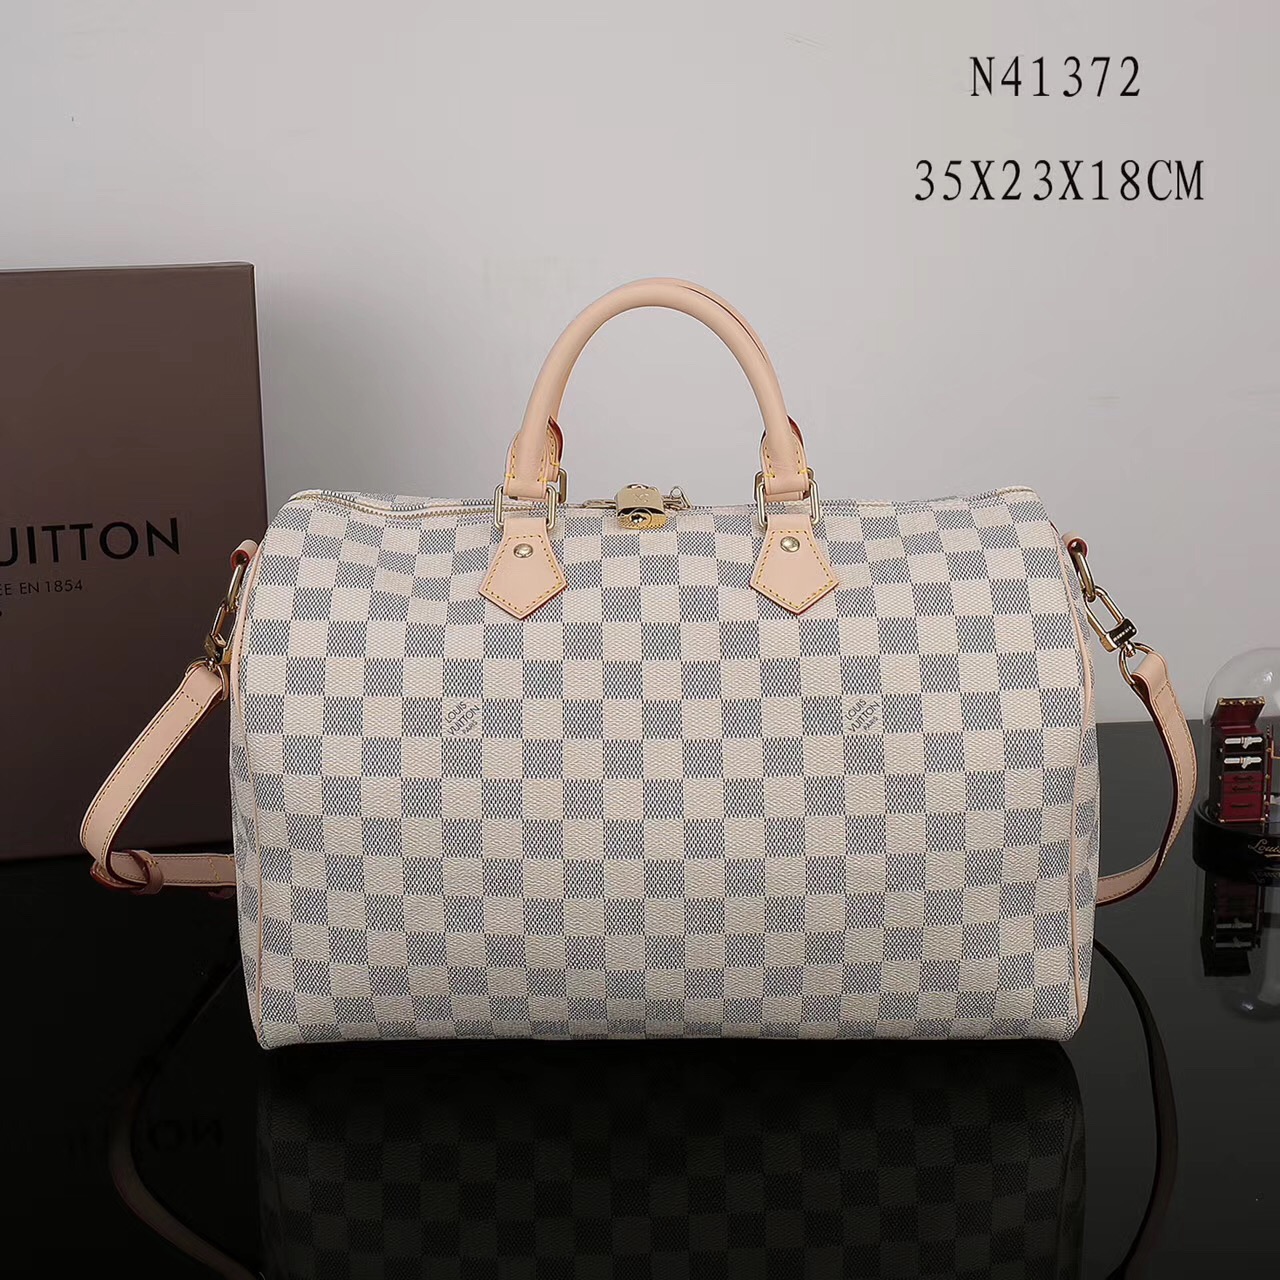 LV Louis Vuitton Speedy 35 Damier bags N41372 Handbags White